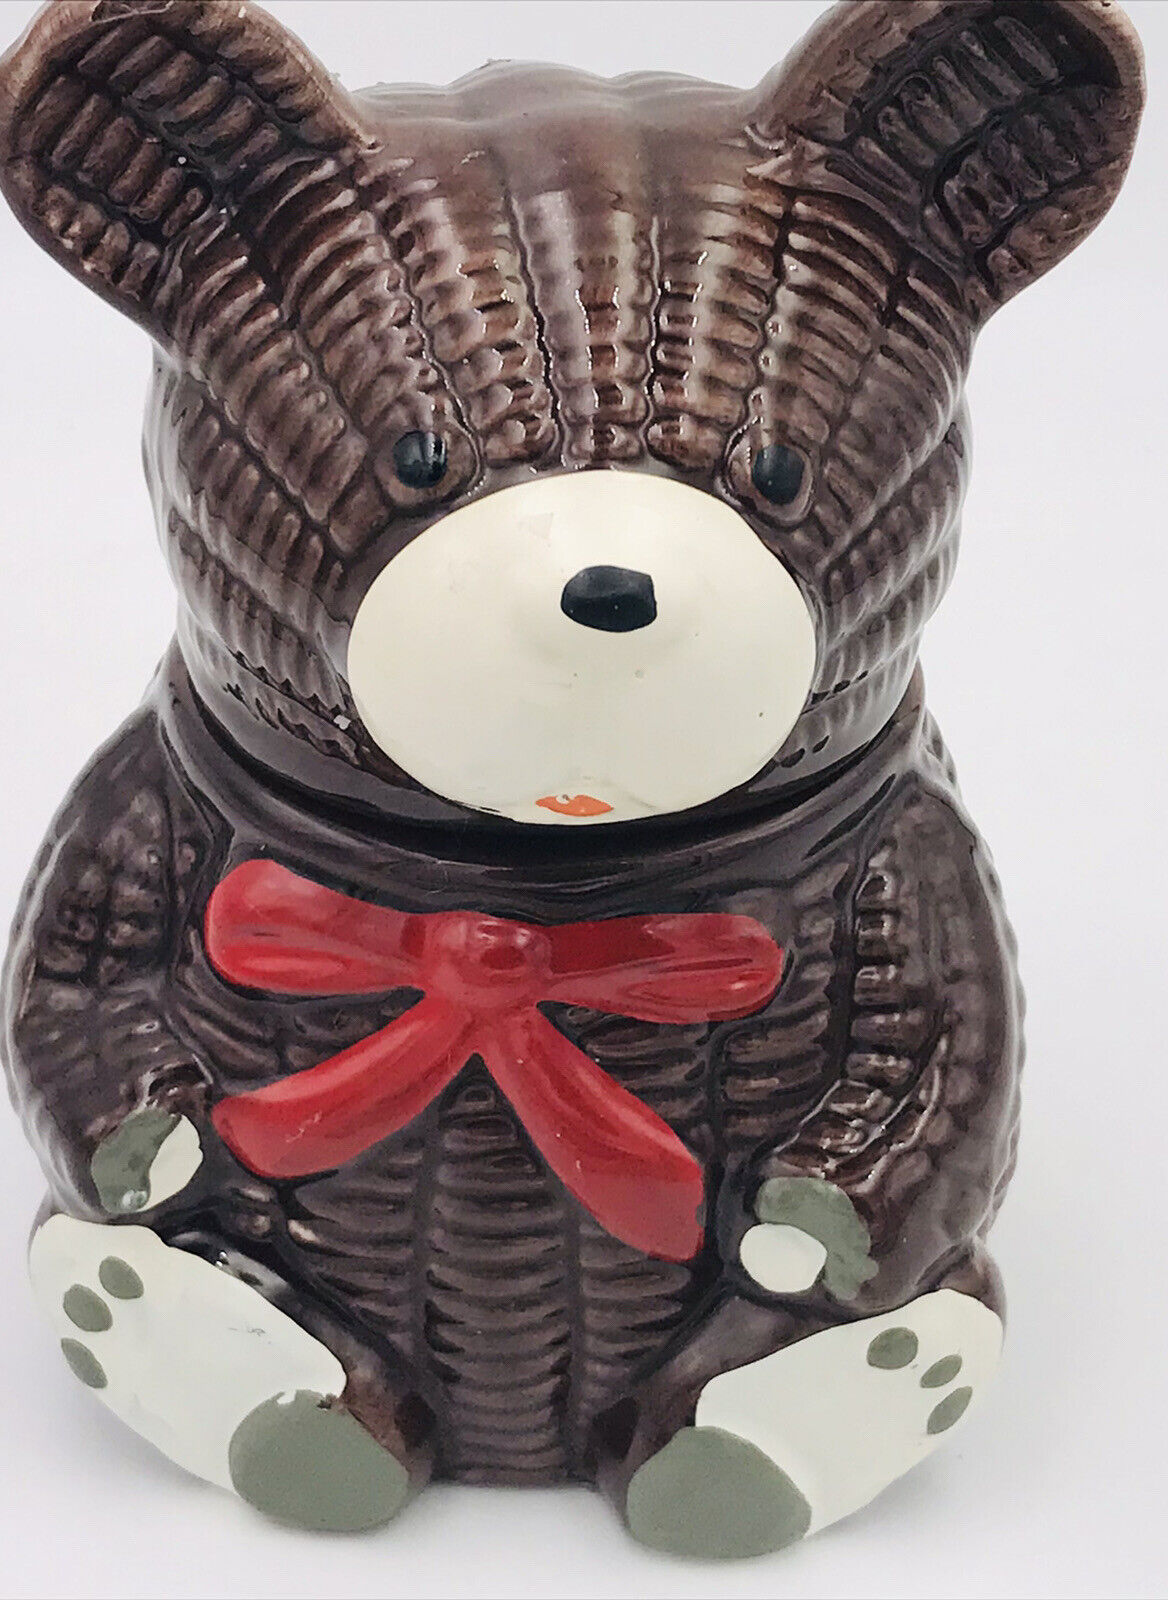 Otagiri Ceramic Teddy Bear 5” Jam Jar Honey Pot NO Spoon 1979 Japan.